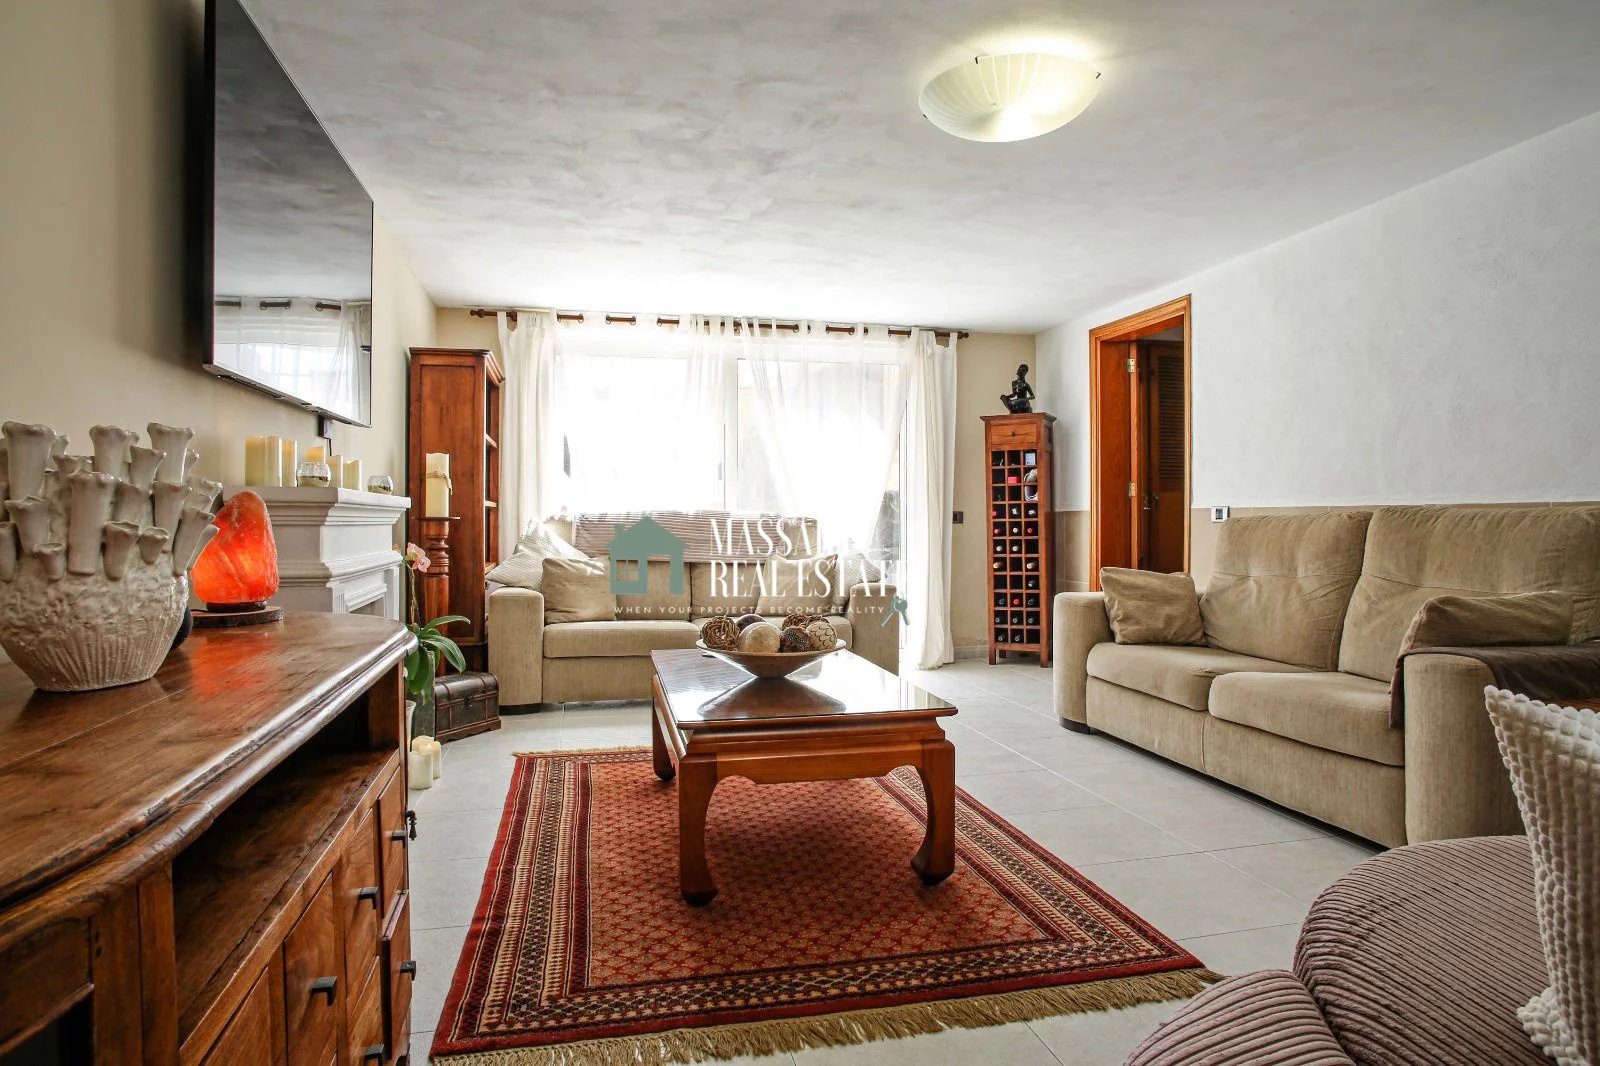 Prächtige Villa auf einem 1005 m2 großen Grundstück in einer absolut ruhigen Gegend in La Estrella.